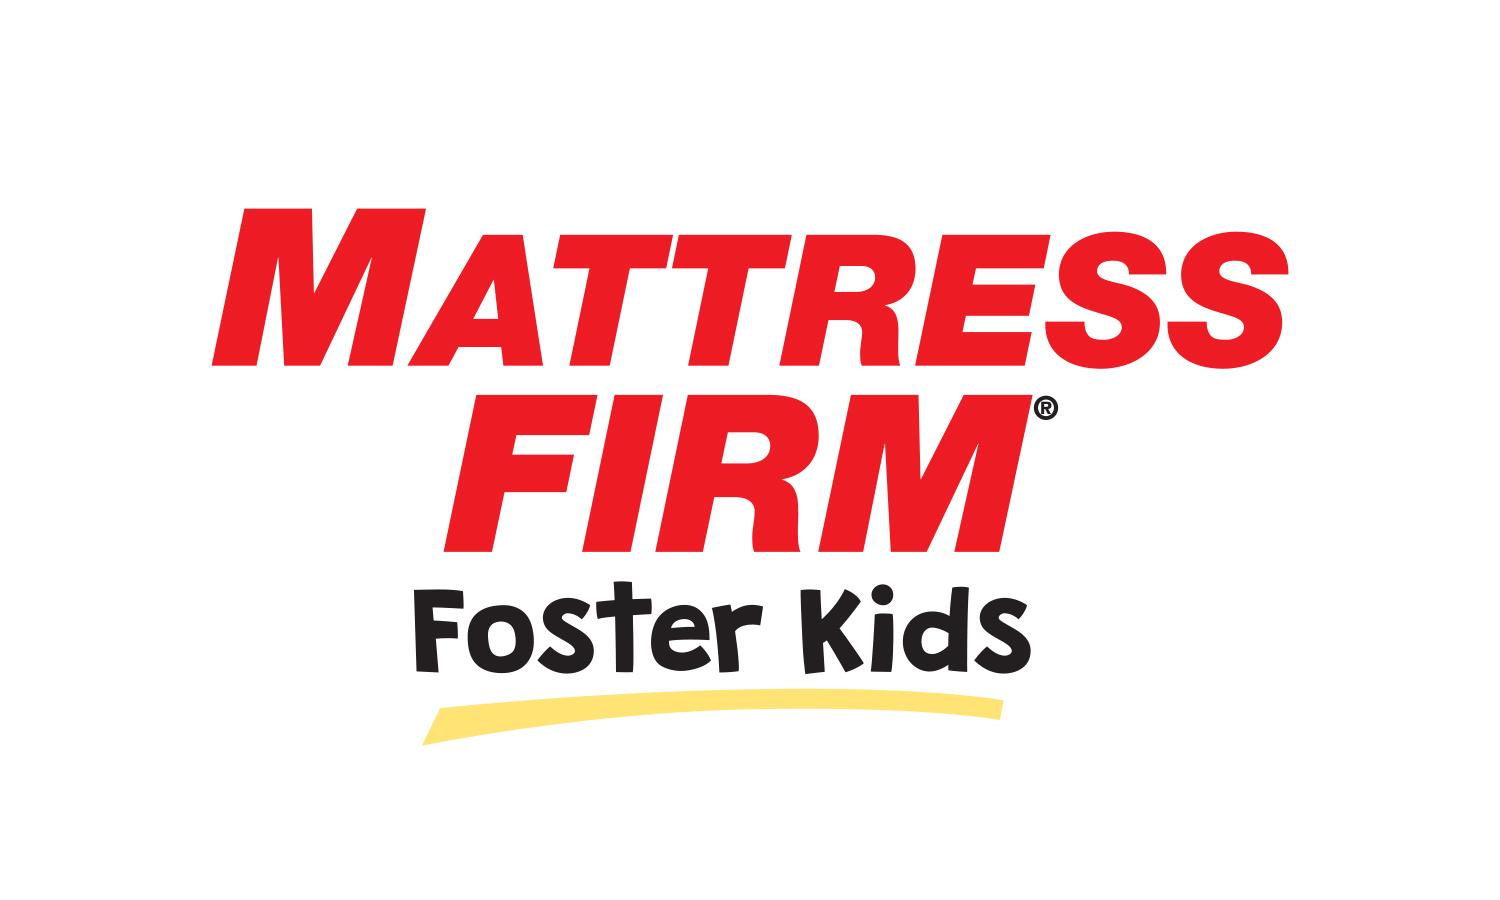 mattress firm foster klid donations